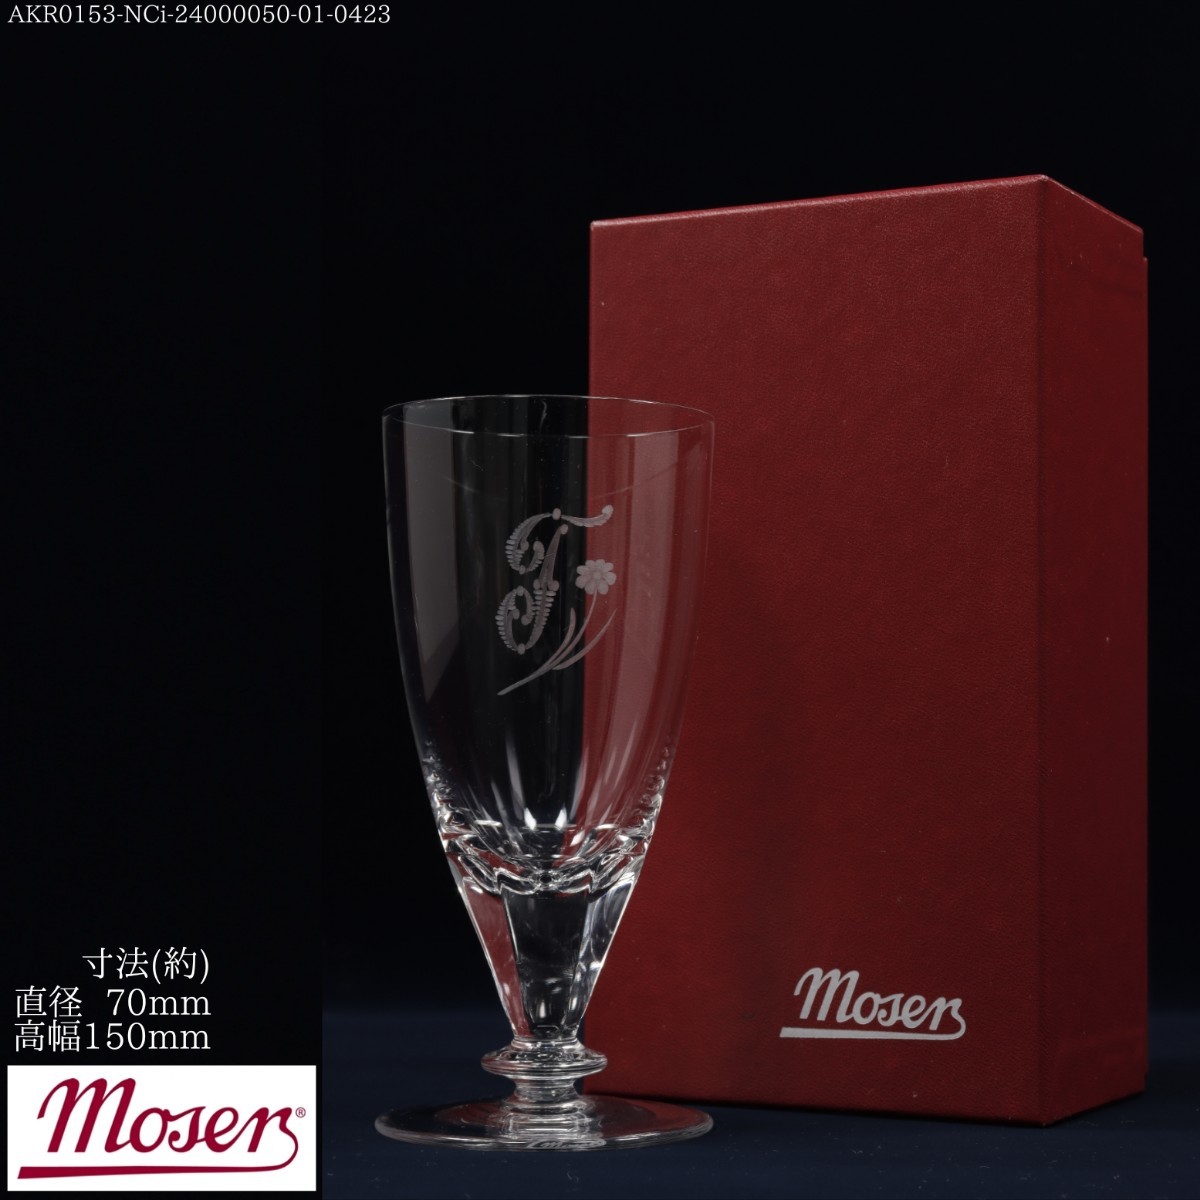 AKA.Re《西洋 ガラス》Moser モーゼル ワイングラス チェコガラス クリスタルガラス チェコ ヨーロッパ Europa Czech Republic_画像1